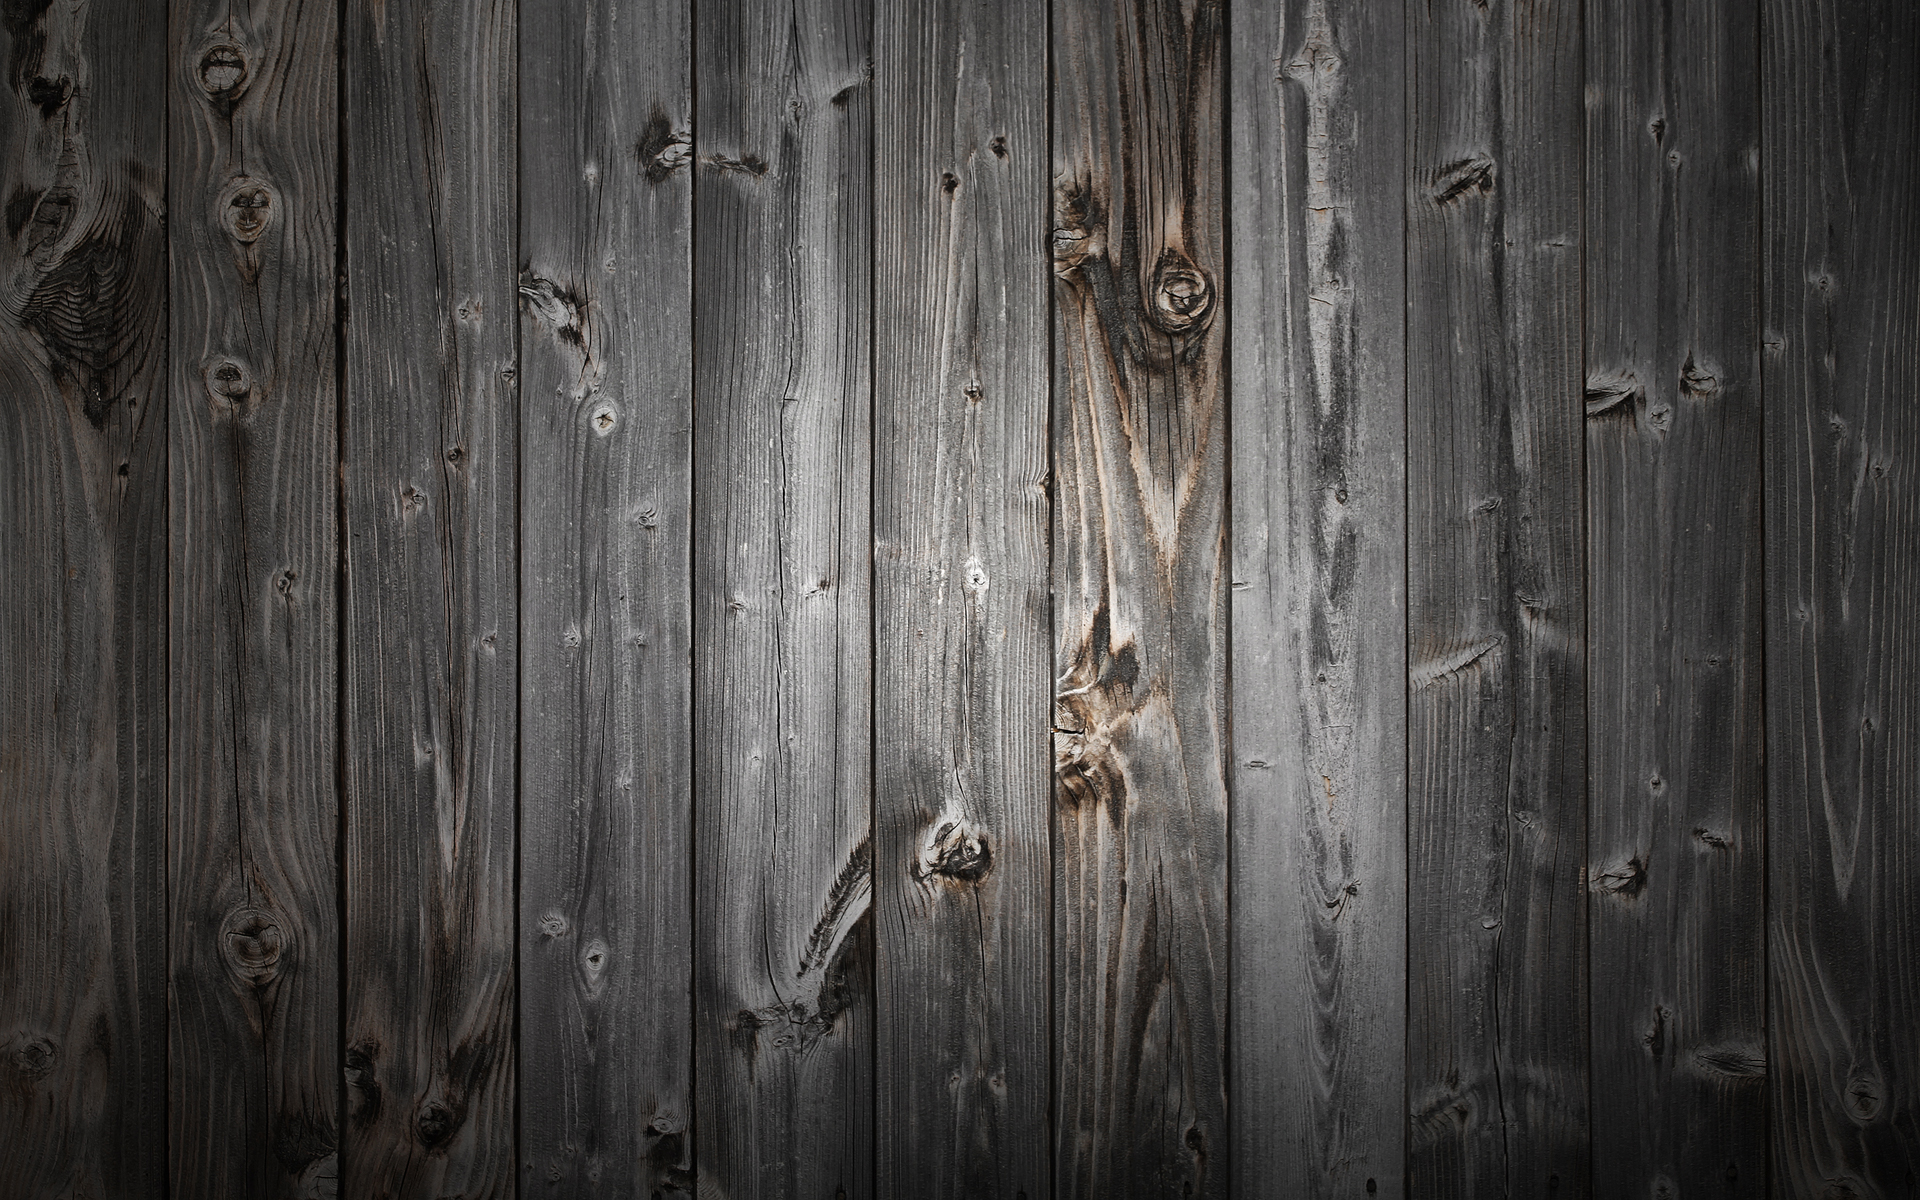 Hình nền Gỗ Màu Đen: Màu đen của nền gỗ mang lại một cái nhìn quyến rũ, tinh tế và thời trang. Tông màu đen kết hợp với những họa tiết gỗ độc đáo tạo ra một vẻ đẹp rất riêng. Hình ảnh nền gỗ màu đen sẽ khiến bạn thấy như đang bước vào một không gian thật thu hút và đẳng cấp.